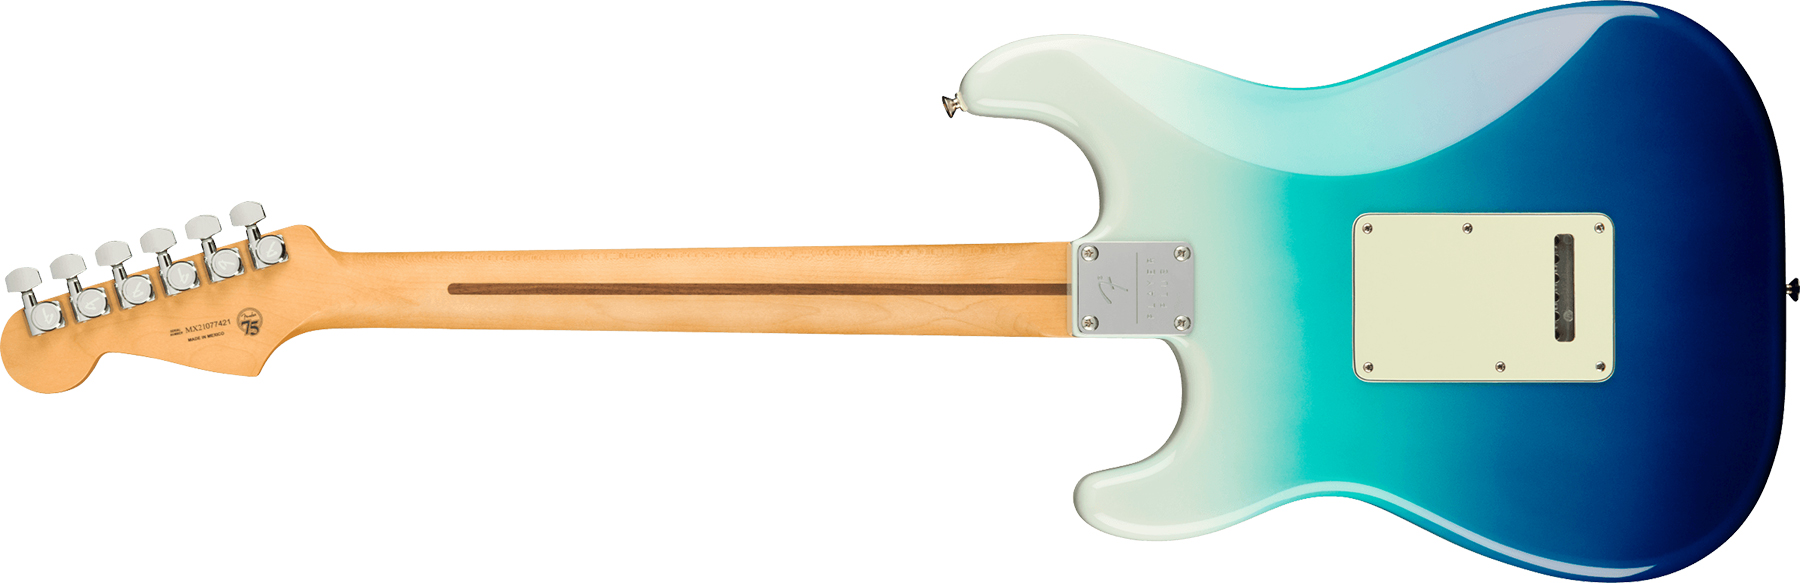 Fender Strat Player Plus Mex Hss Trem Pf - Belair Blue - Guitare Électrique Forme Str - Variation 1